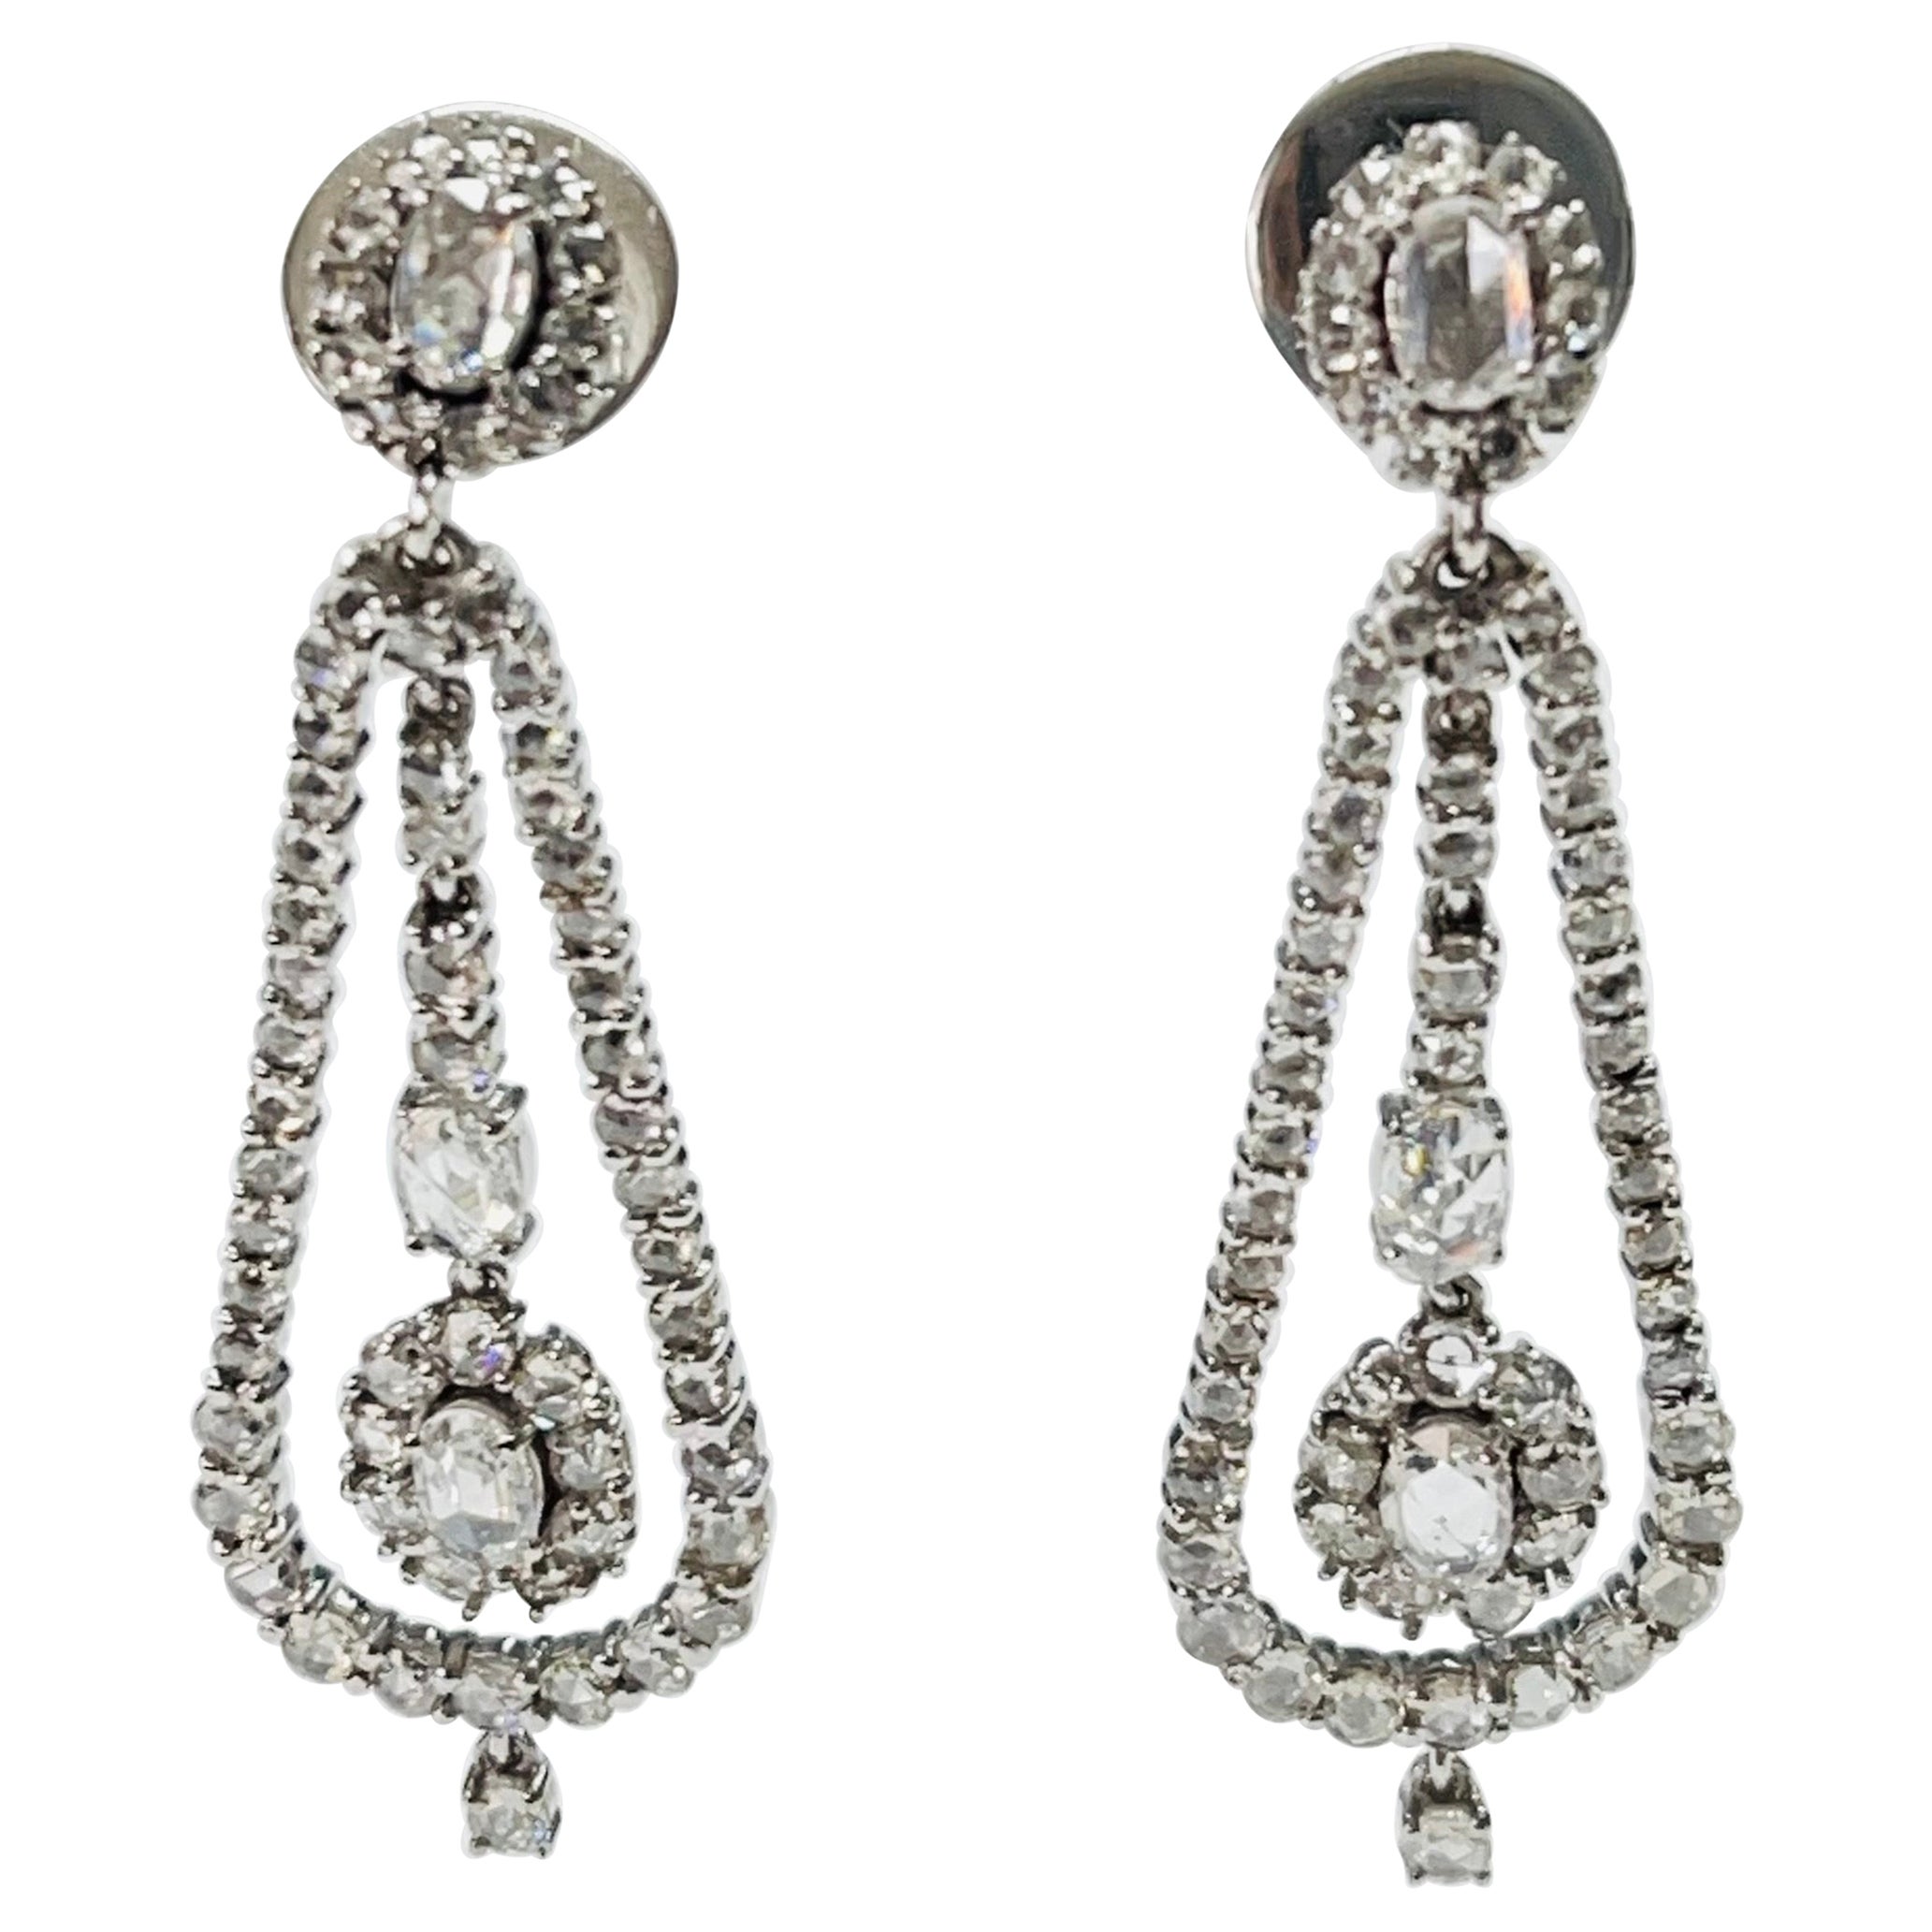 Rose Cut Diamond Chandelier Earrings In 18K White Gold. 